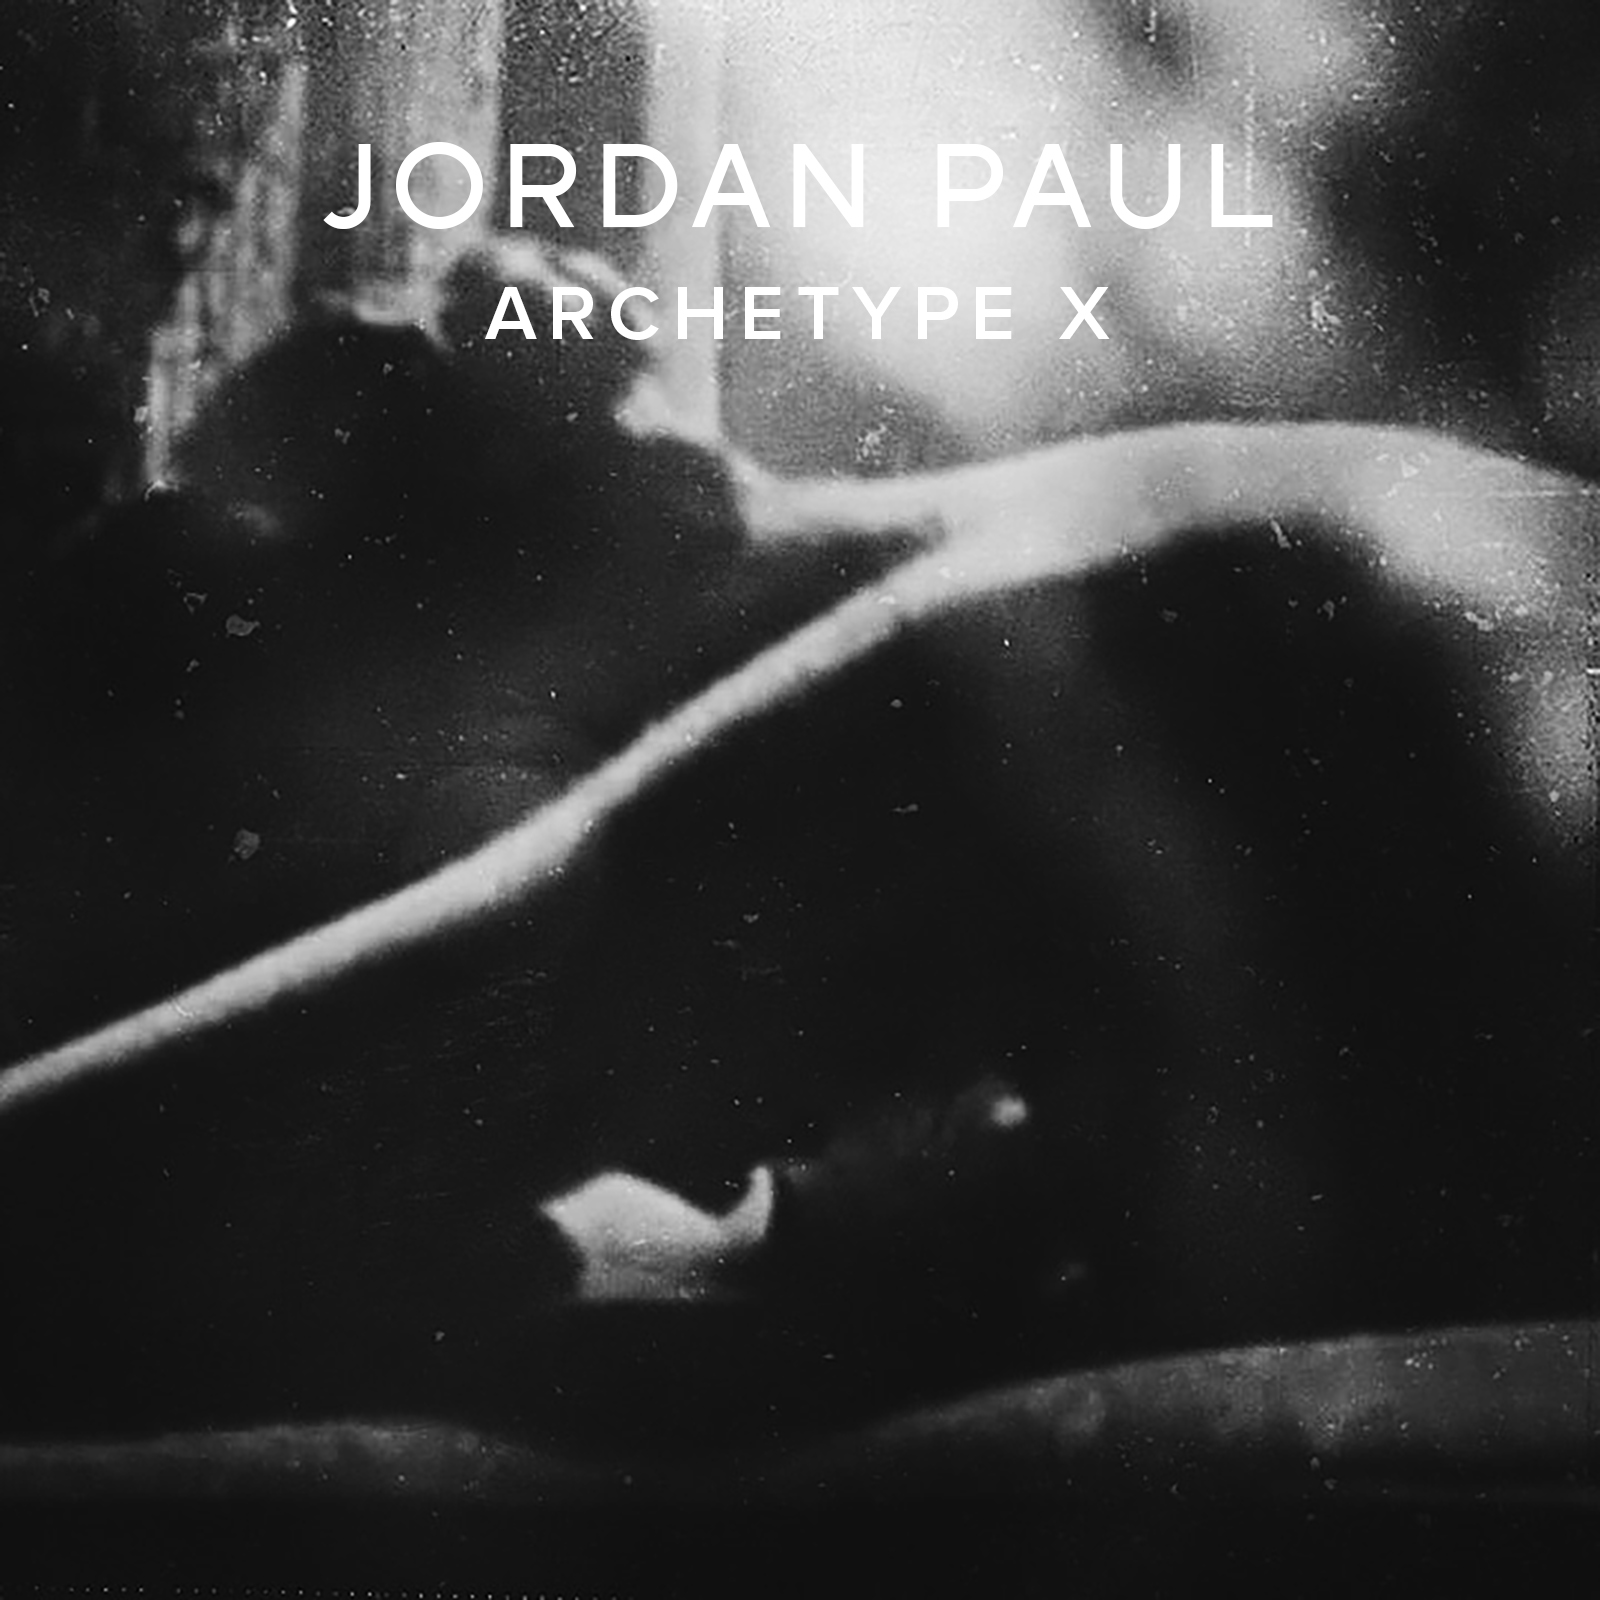  Jordan Paul – “Archetype X”